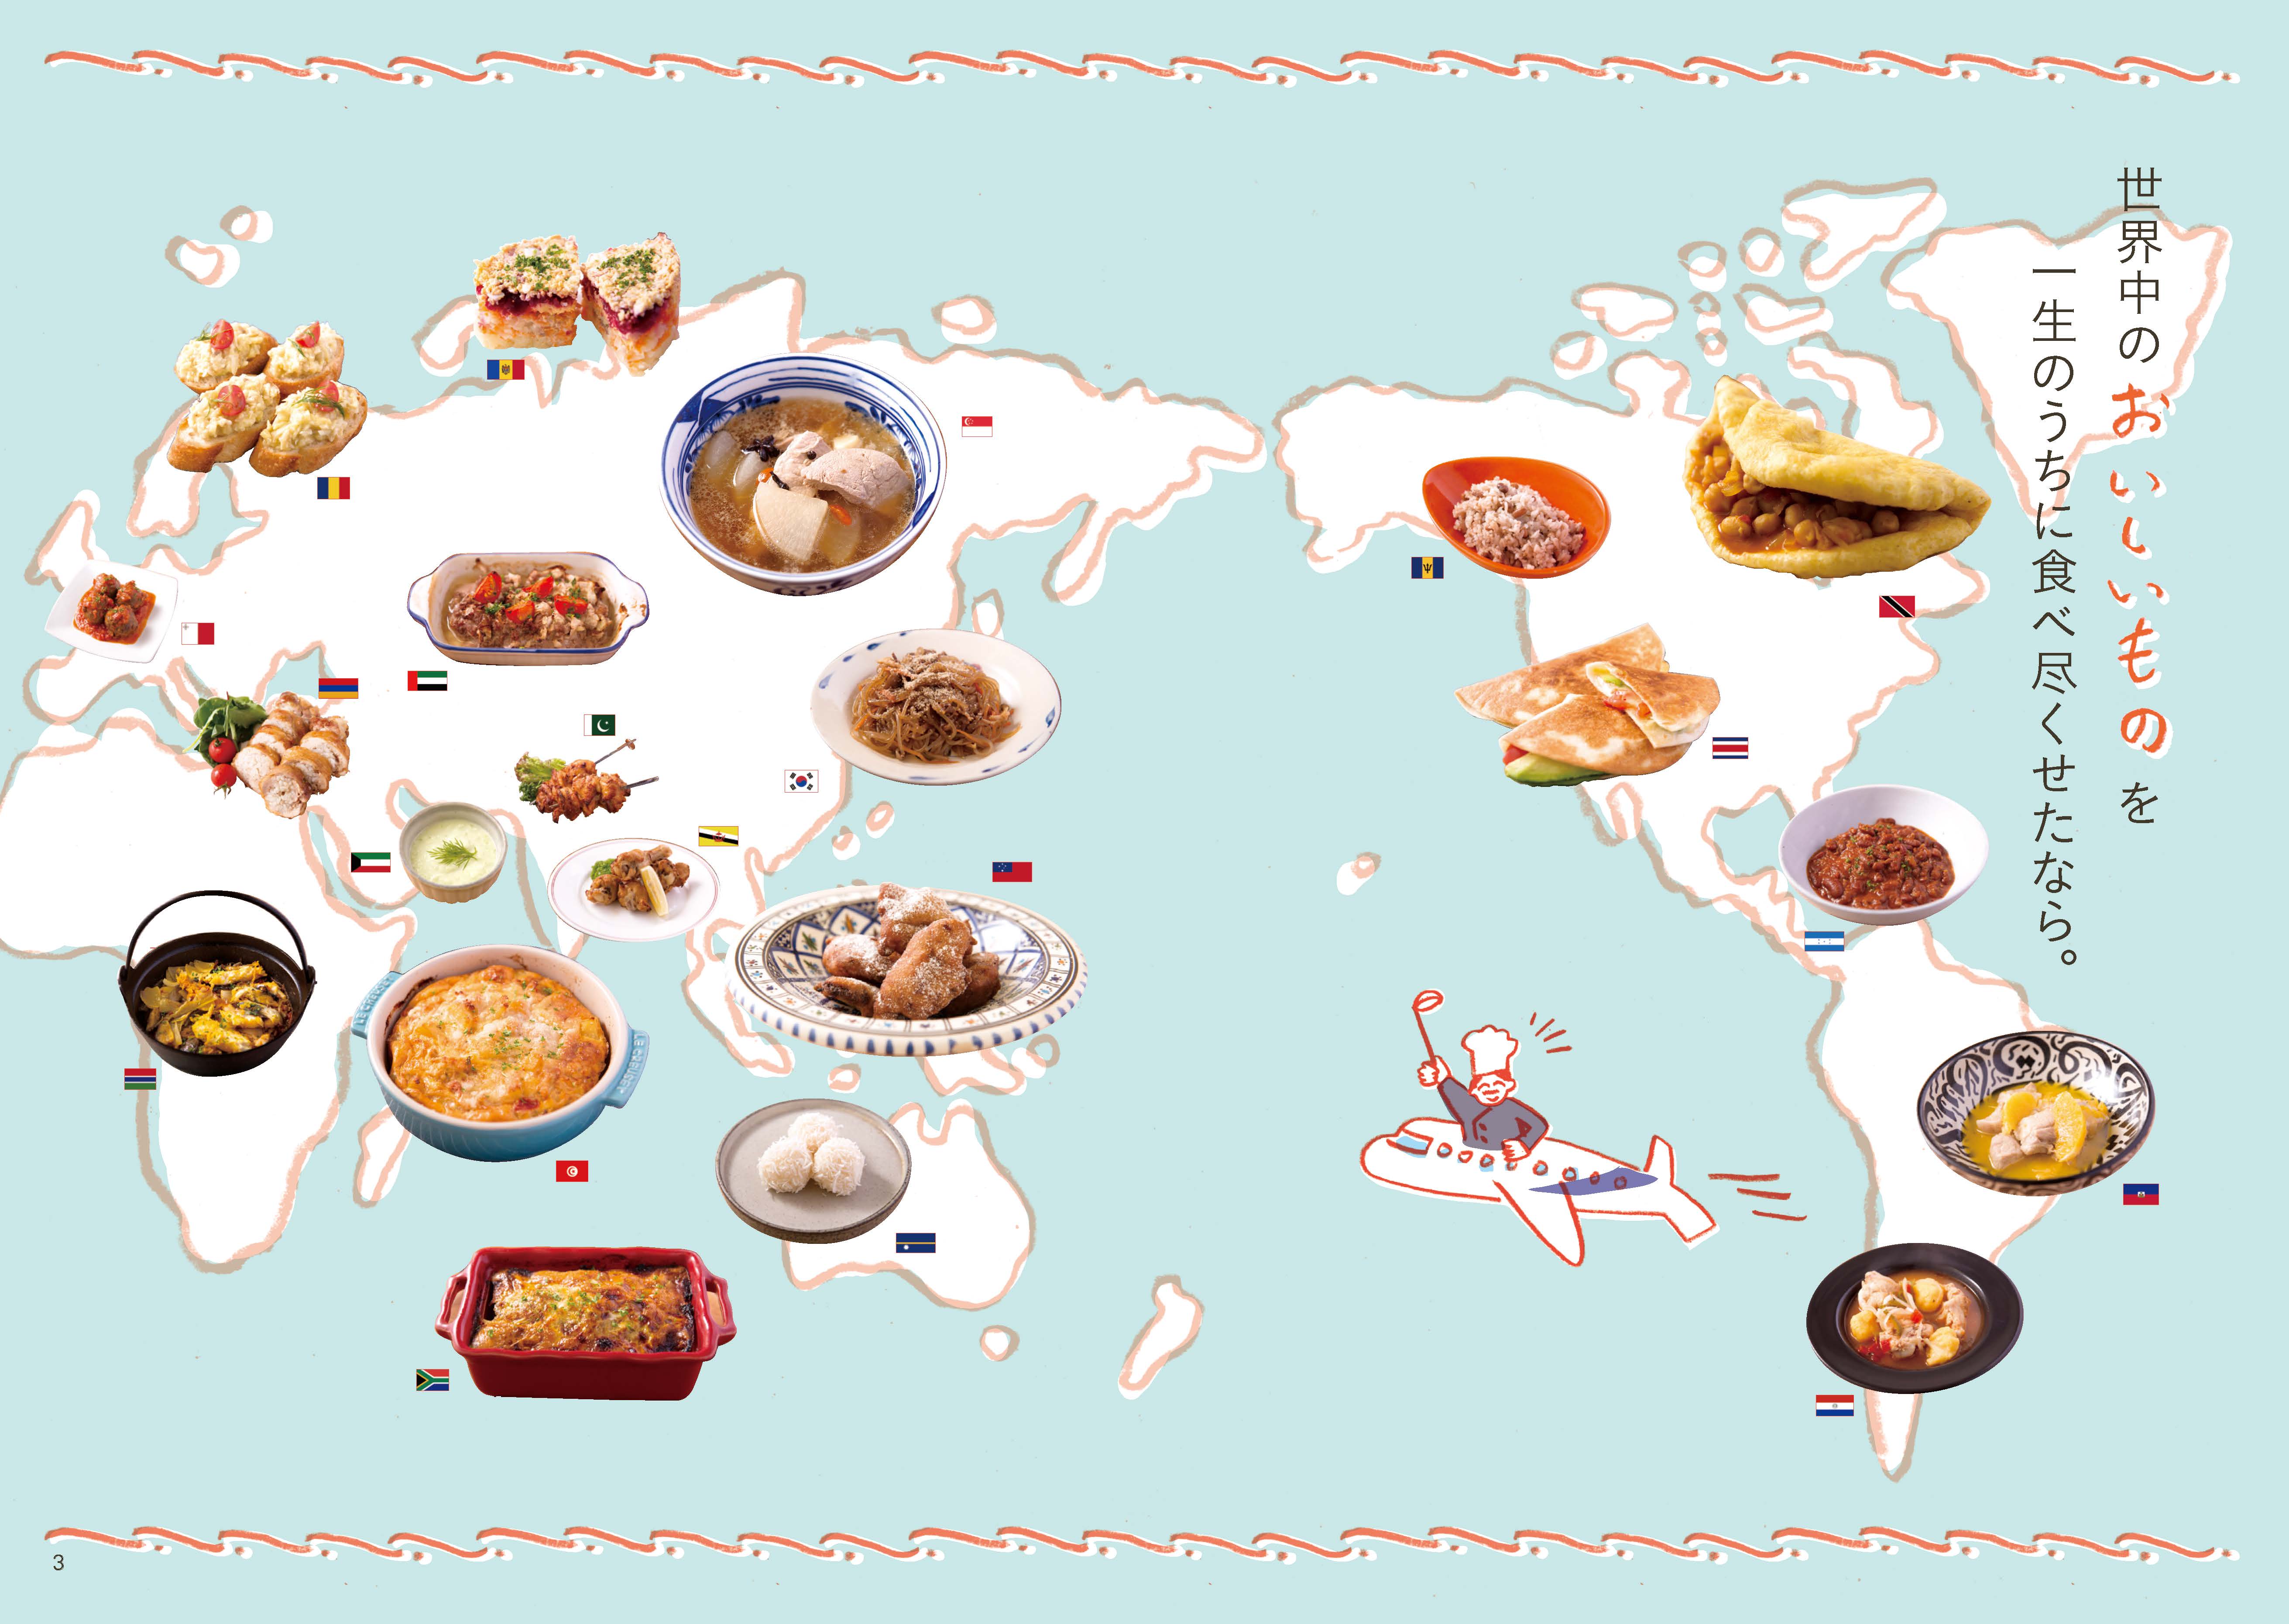 全196ヵ国おうちで作れる世界のレシピ ライツ社